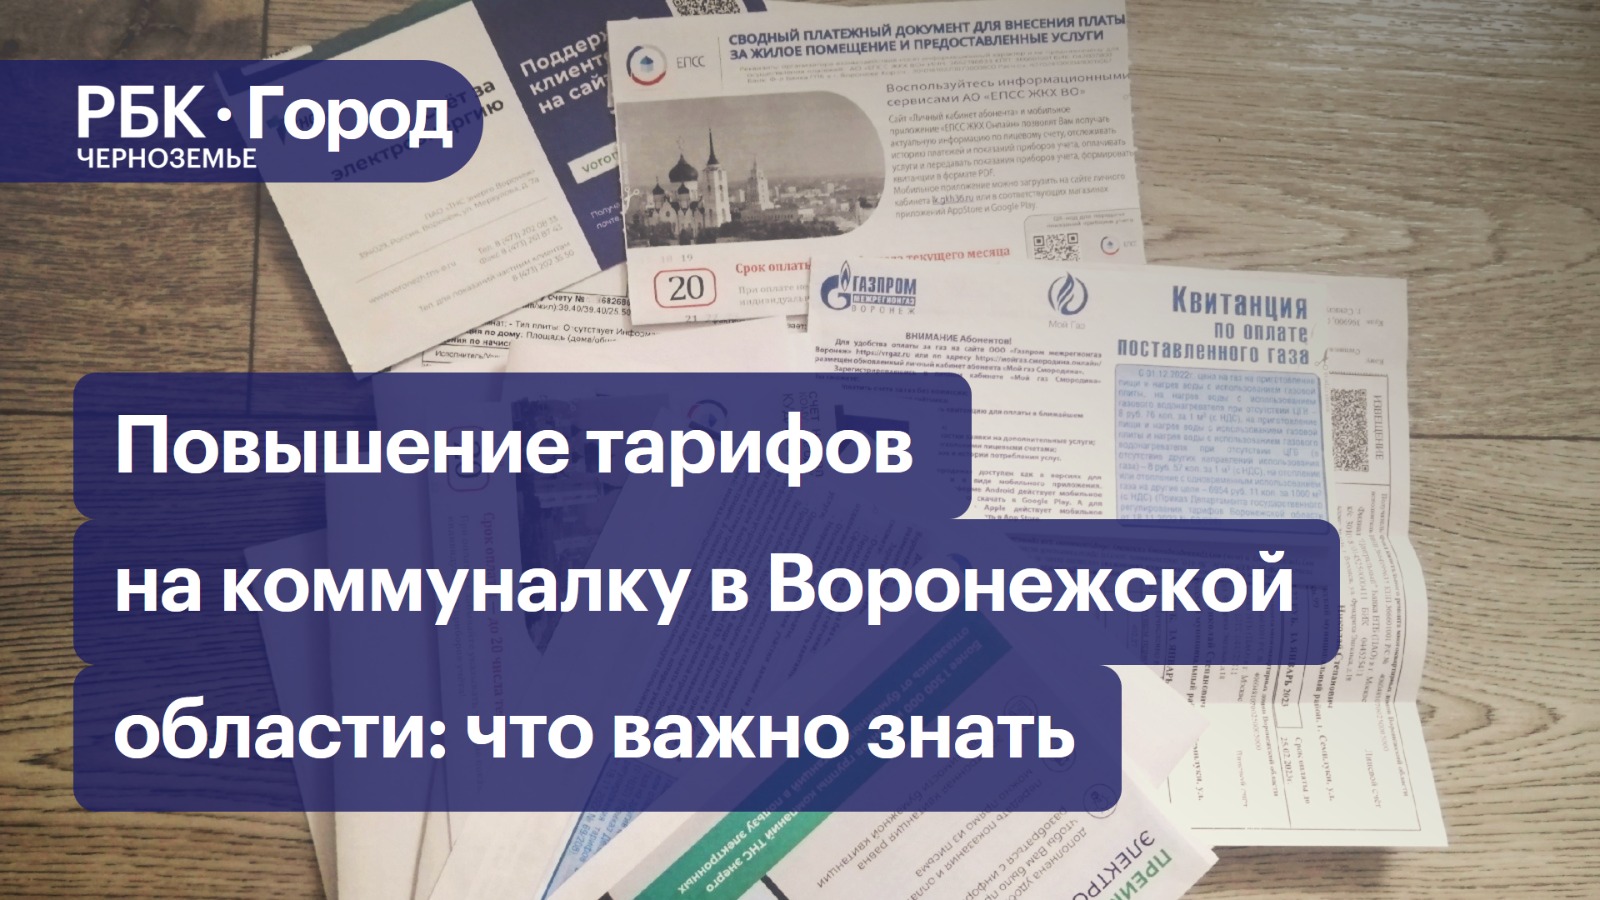 Повышение тарифов на коммуналку в Воронежской области: что важно знать